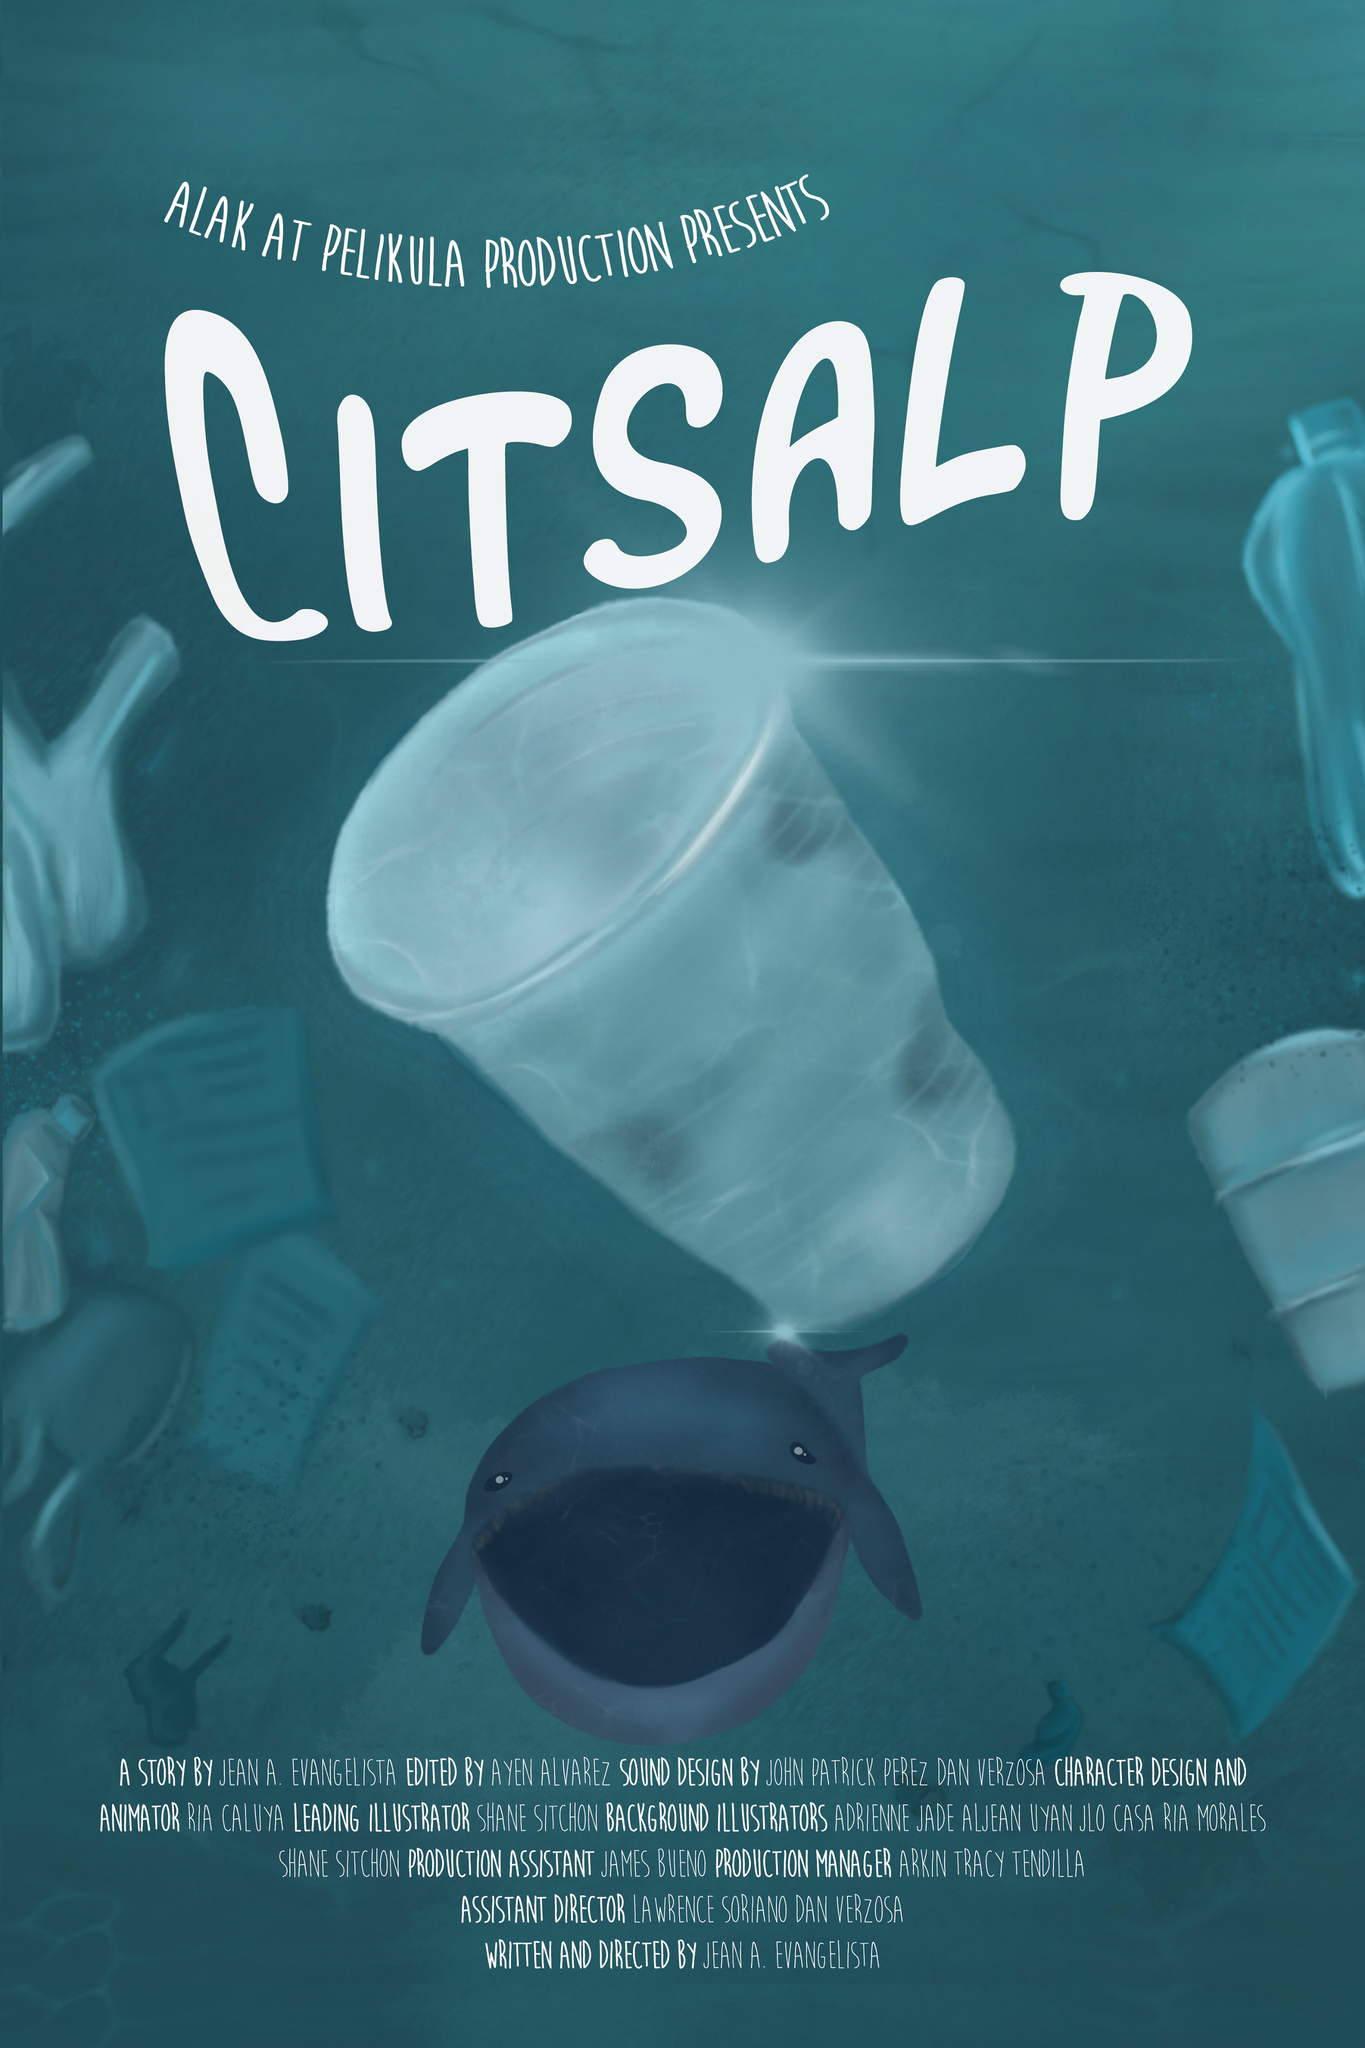 Citsalp Poster